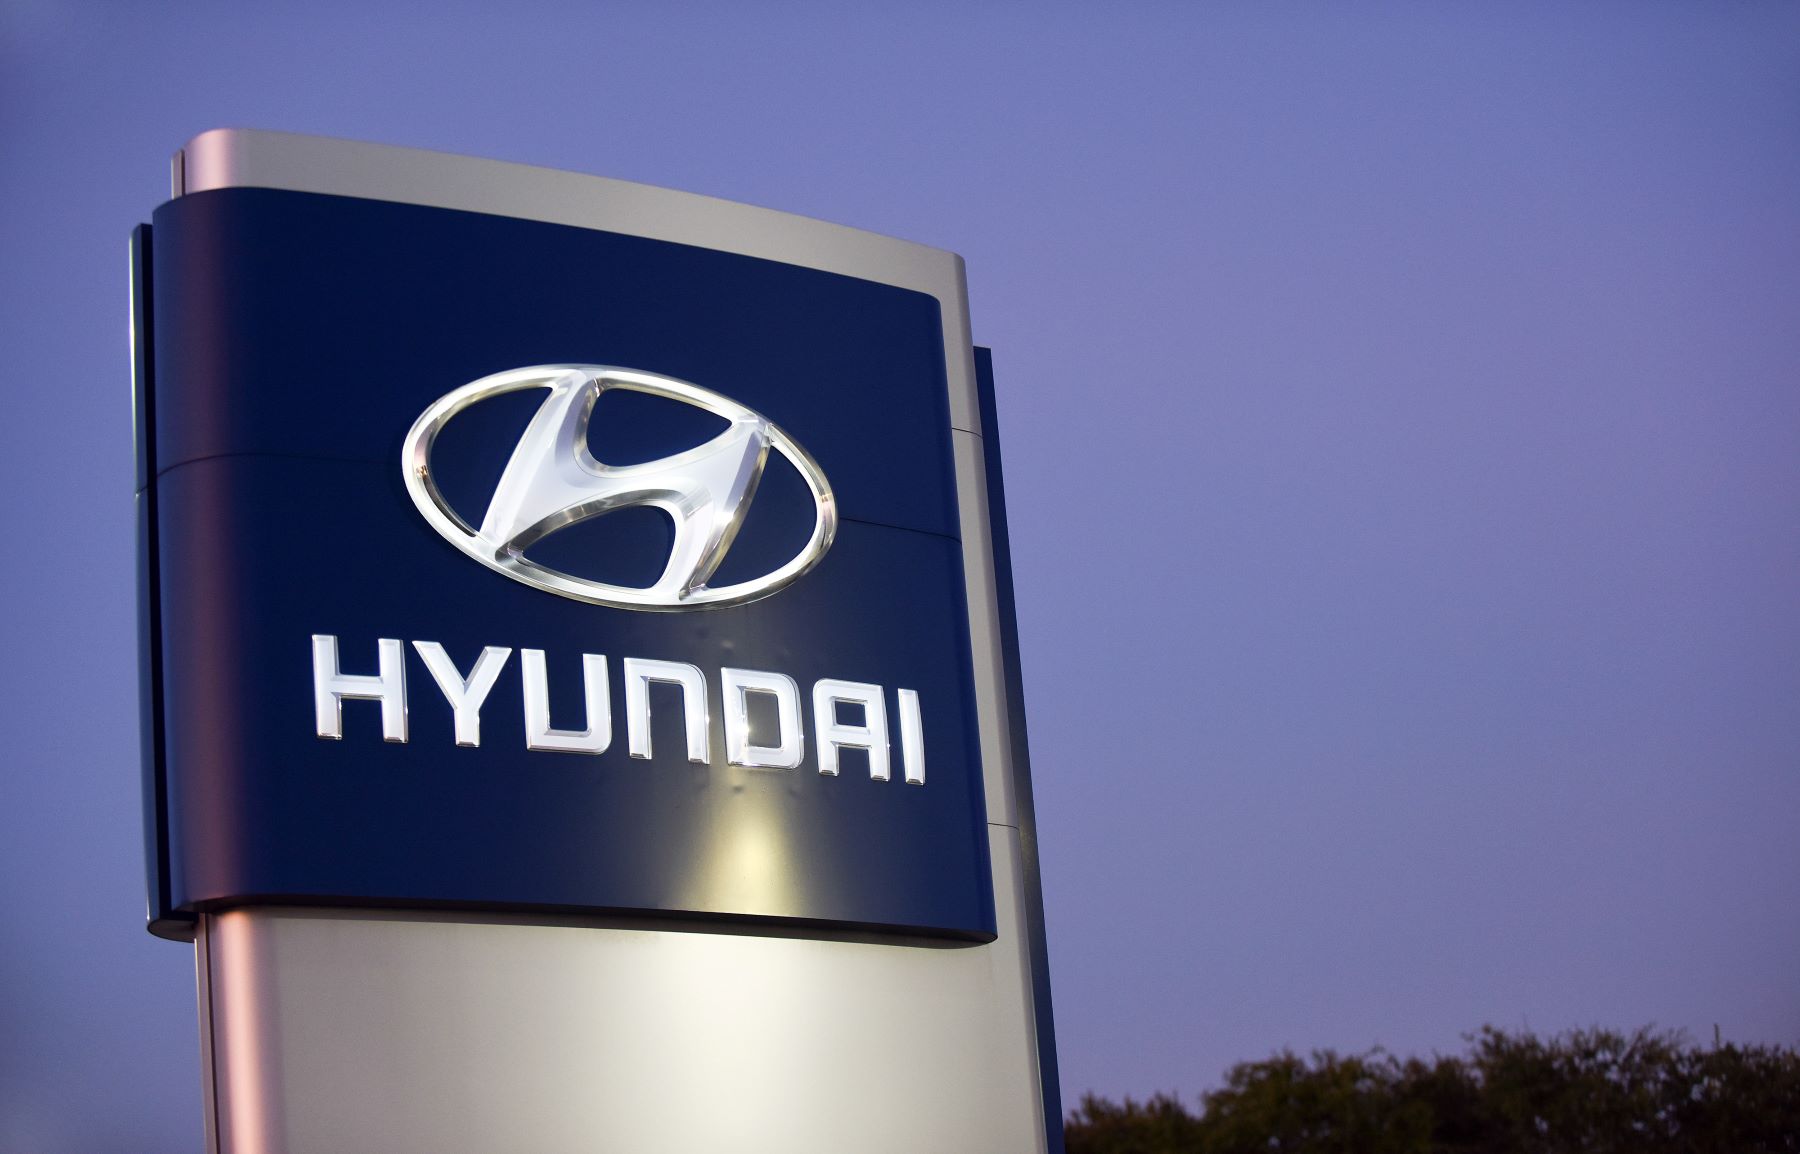 Seen a Hyundai dealer sign in Florida